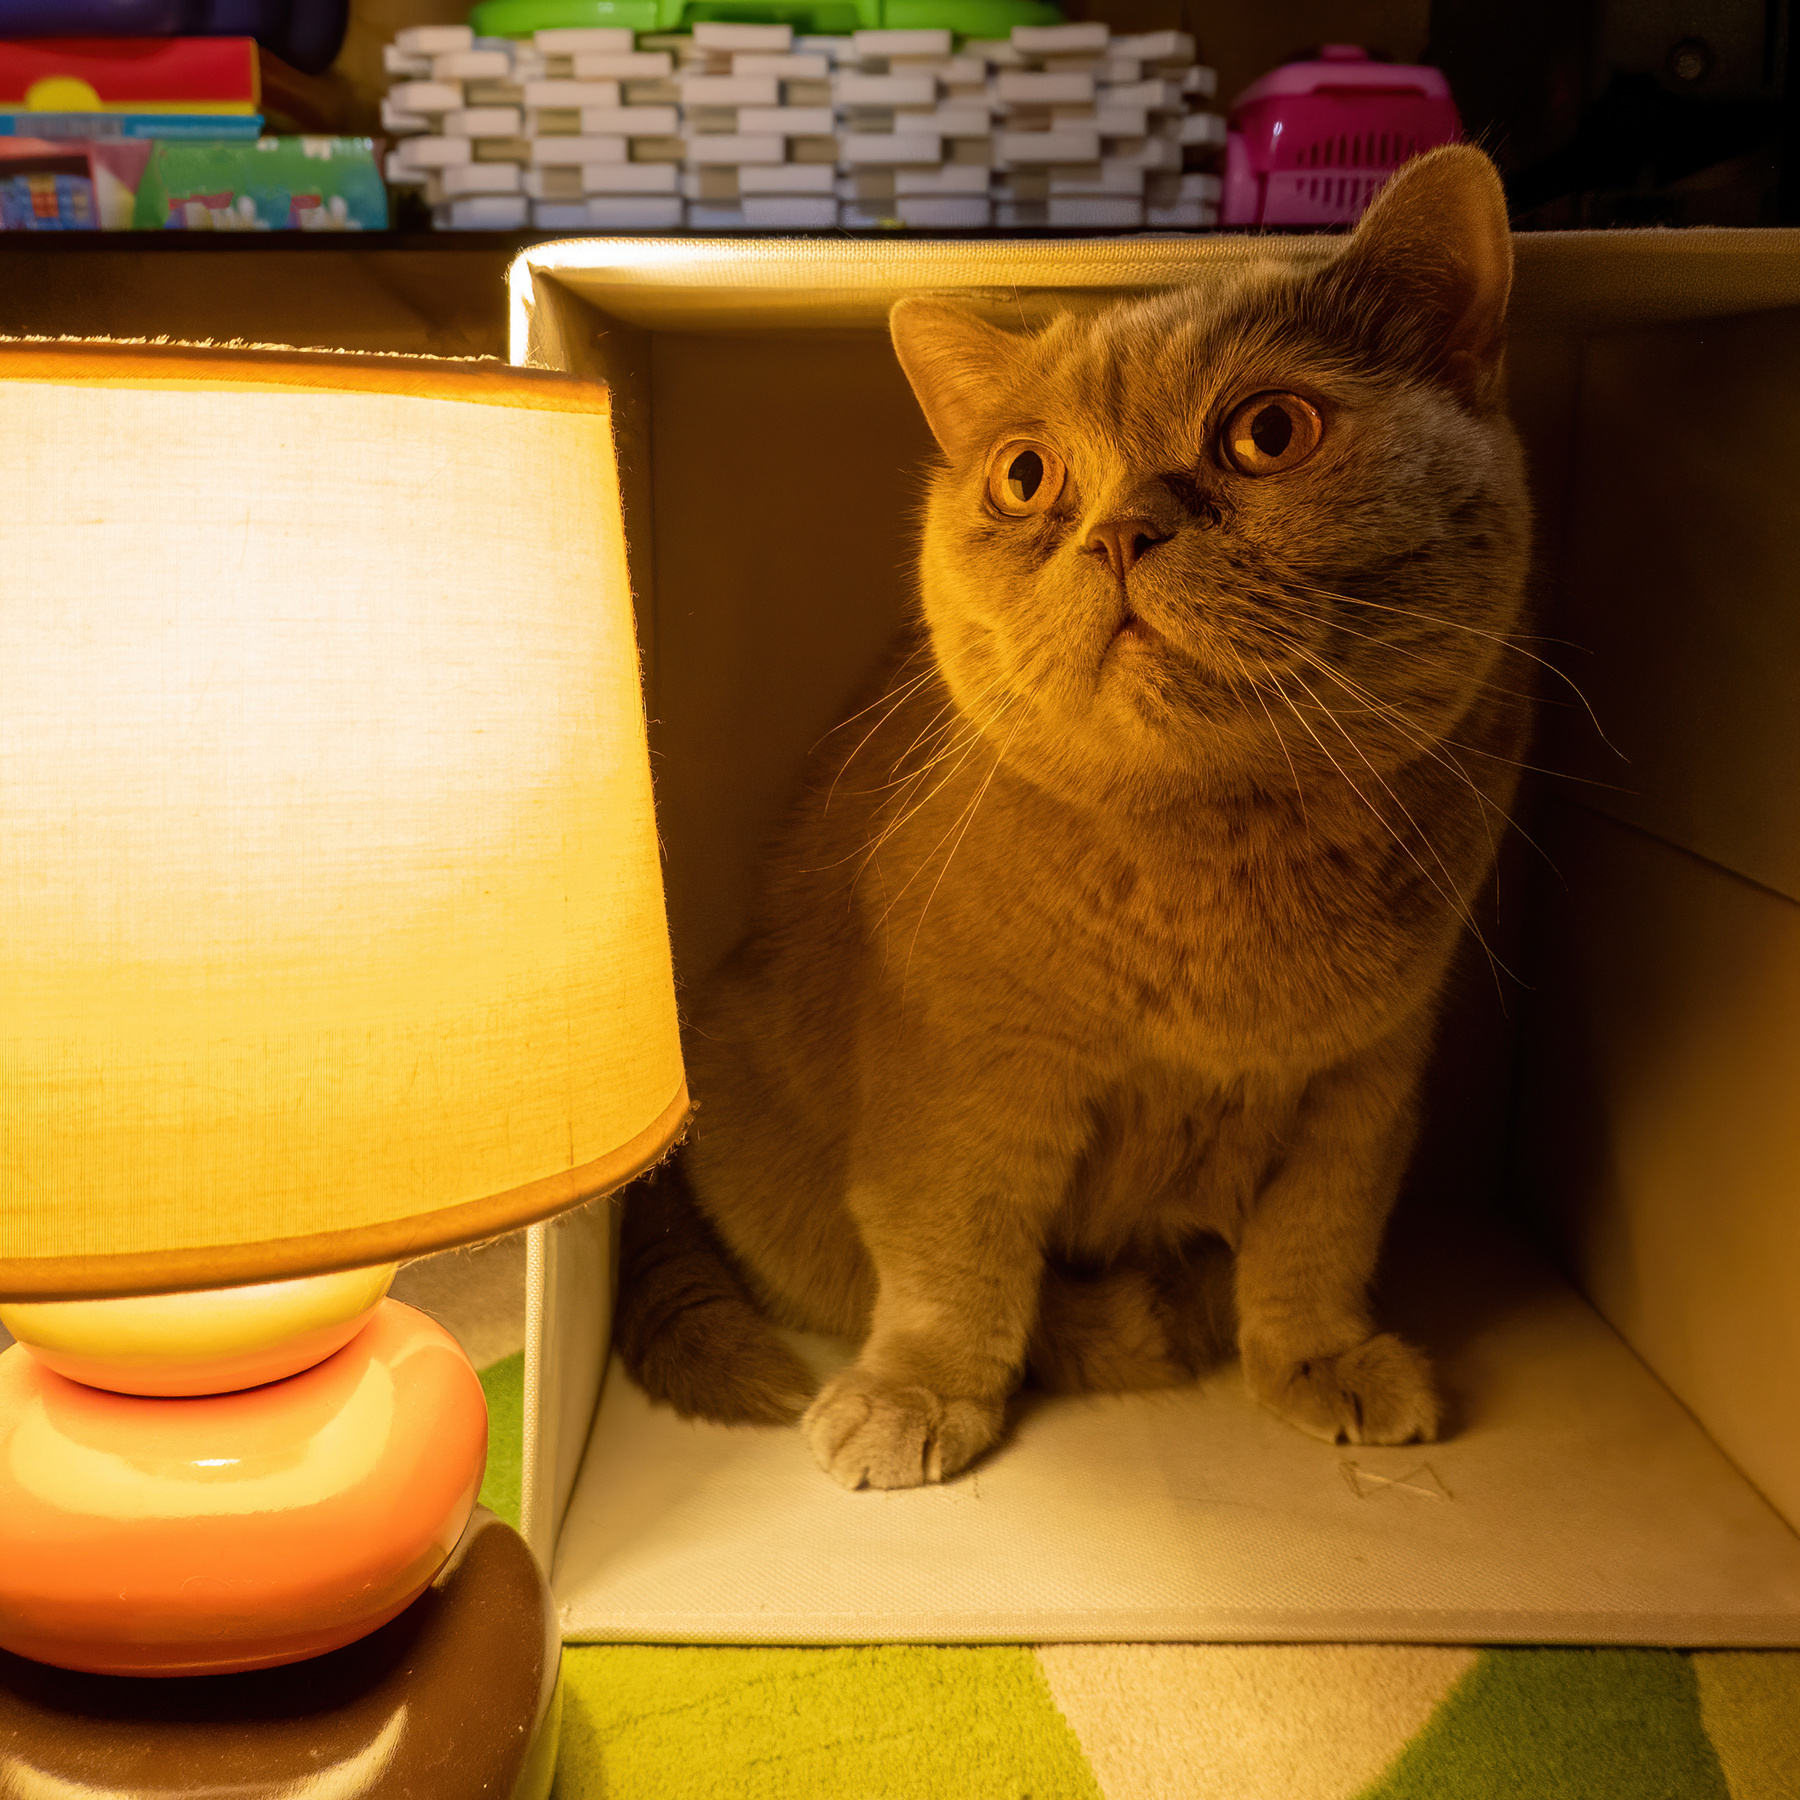 Котолампа или время охренительных историй антонмазаев antonmazaev cat кот котолампа животное лампа свет кошка